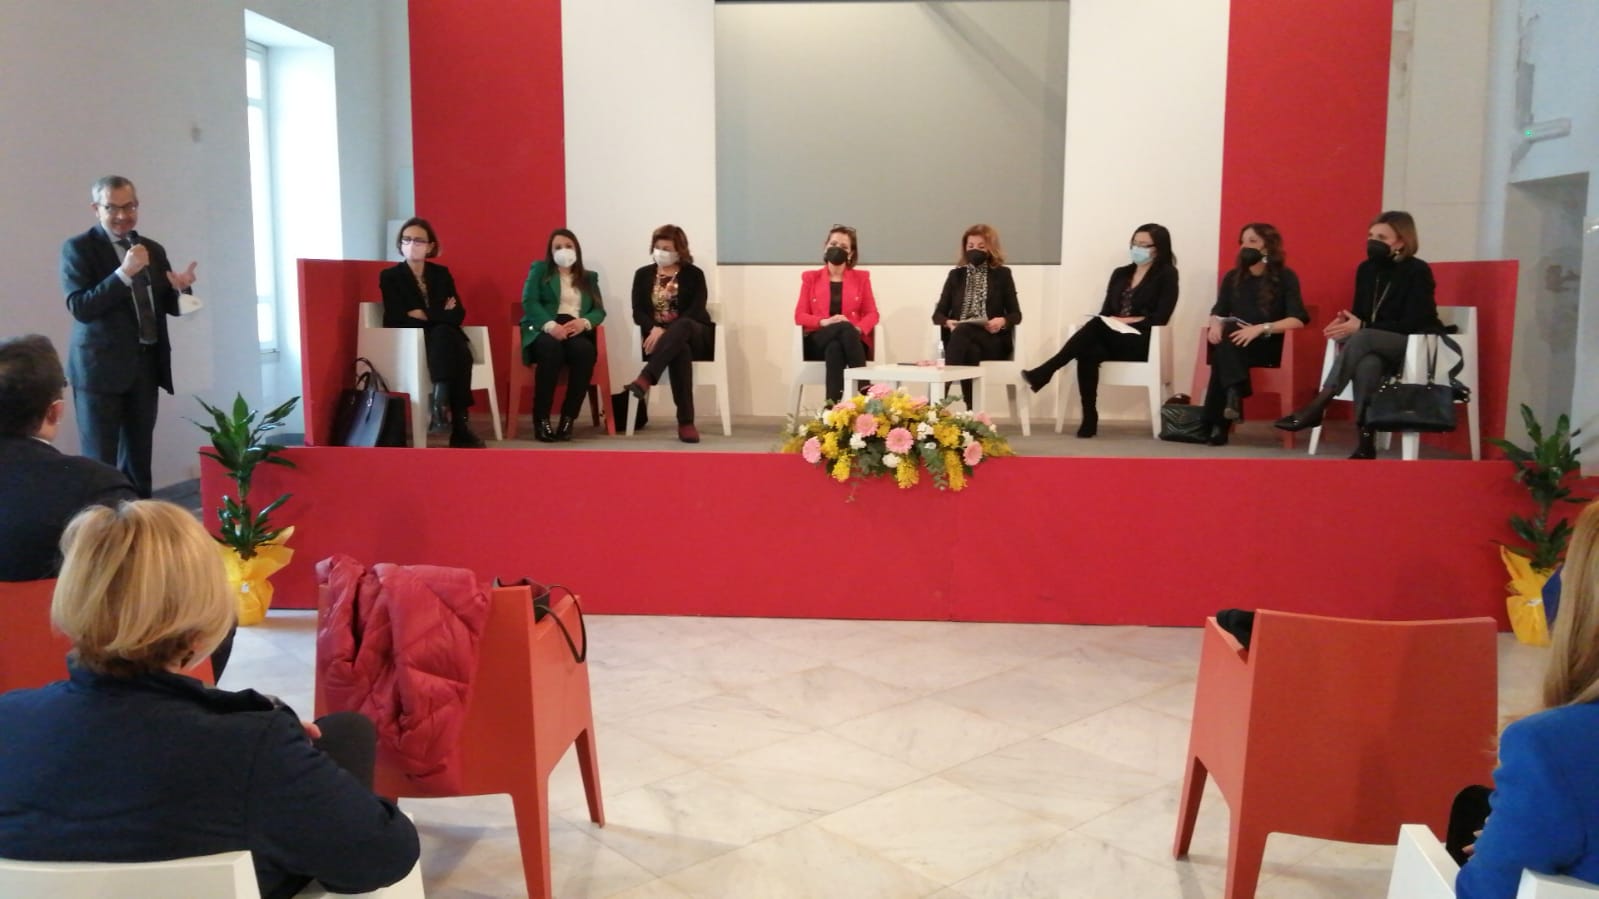 Benevento|”Donne: opportunità e futuro” incontro a Palazzo Paolo V